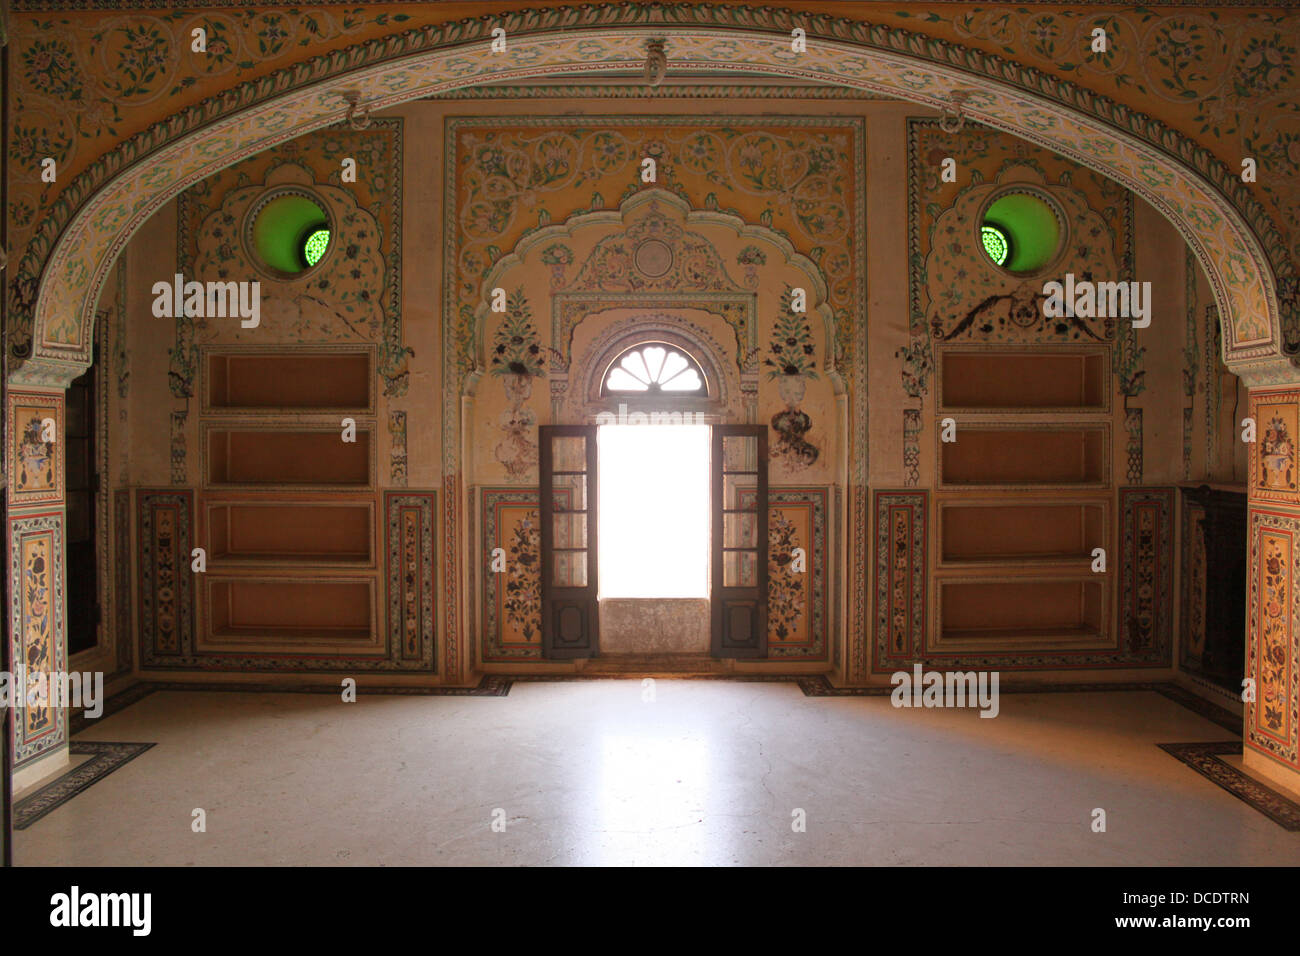 La luz entra a través de la ventana arqueada hacia el dormitorio de la reina. Fuerte Amber Palace Jaipur Foto de stock